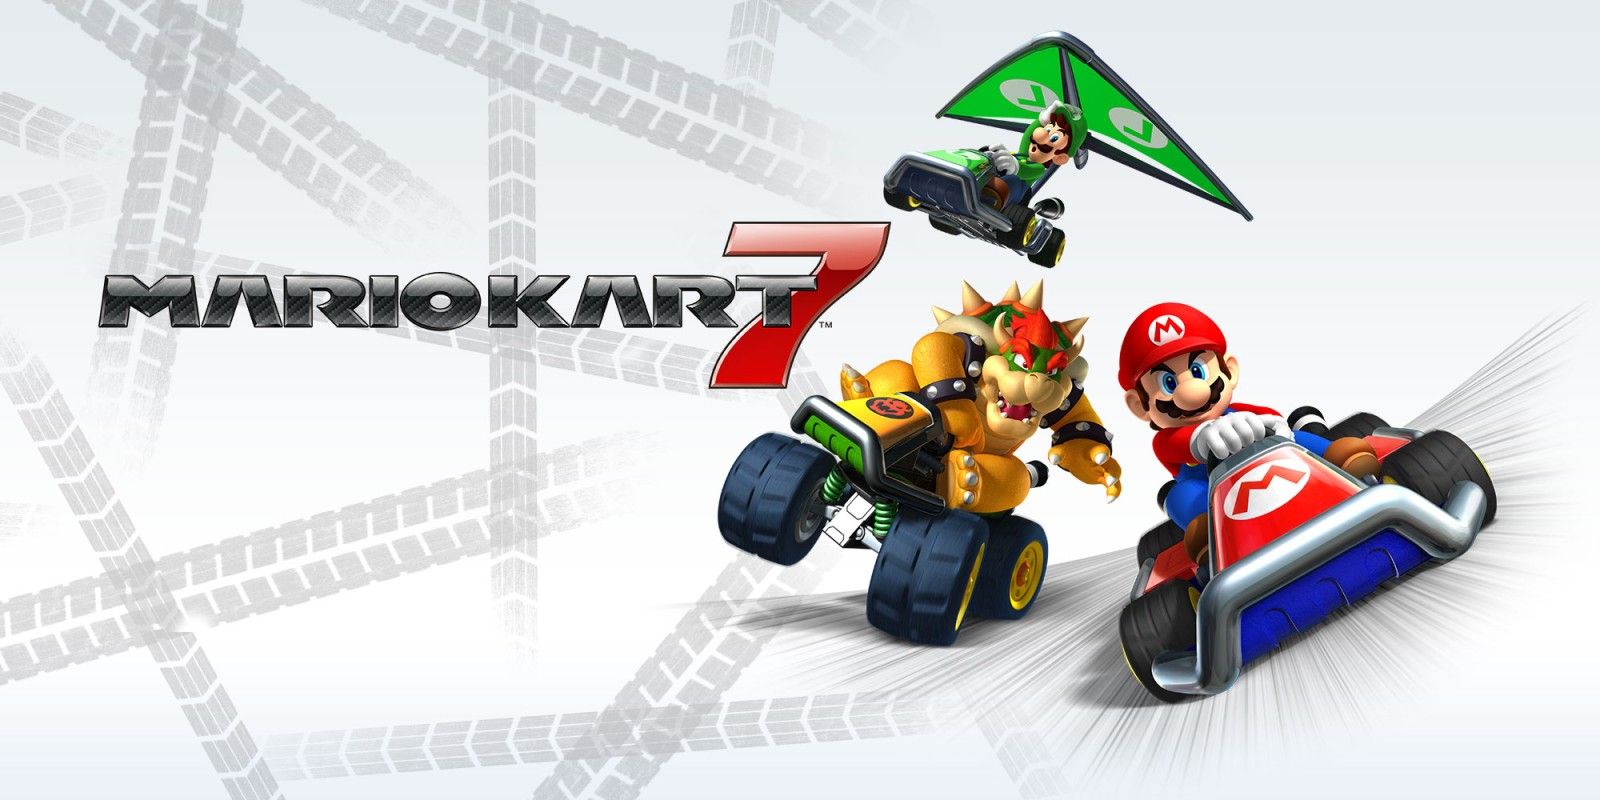 Start screen for Mario Kart 7